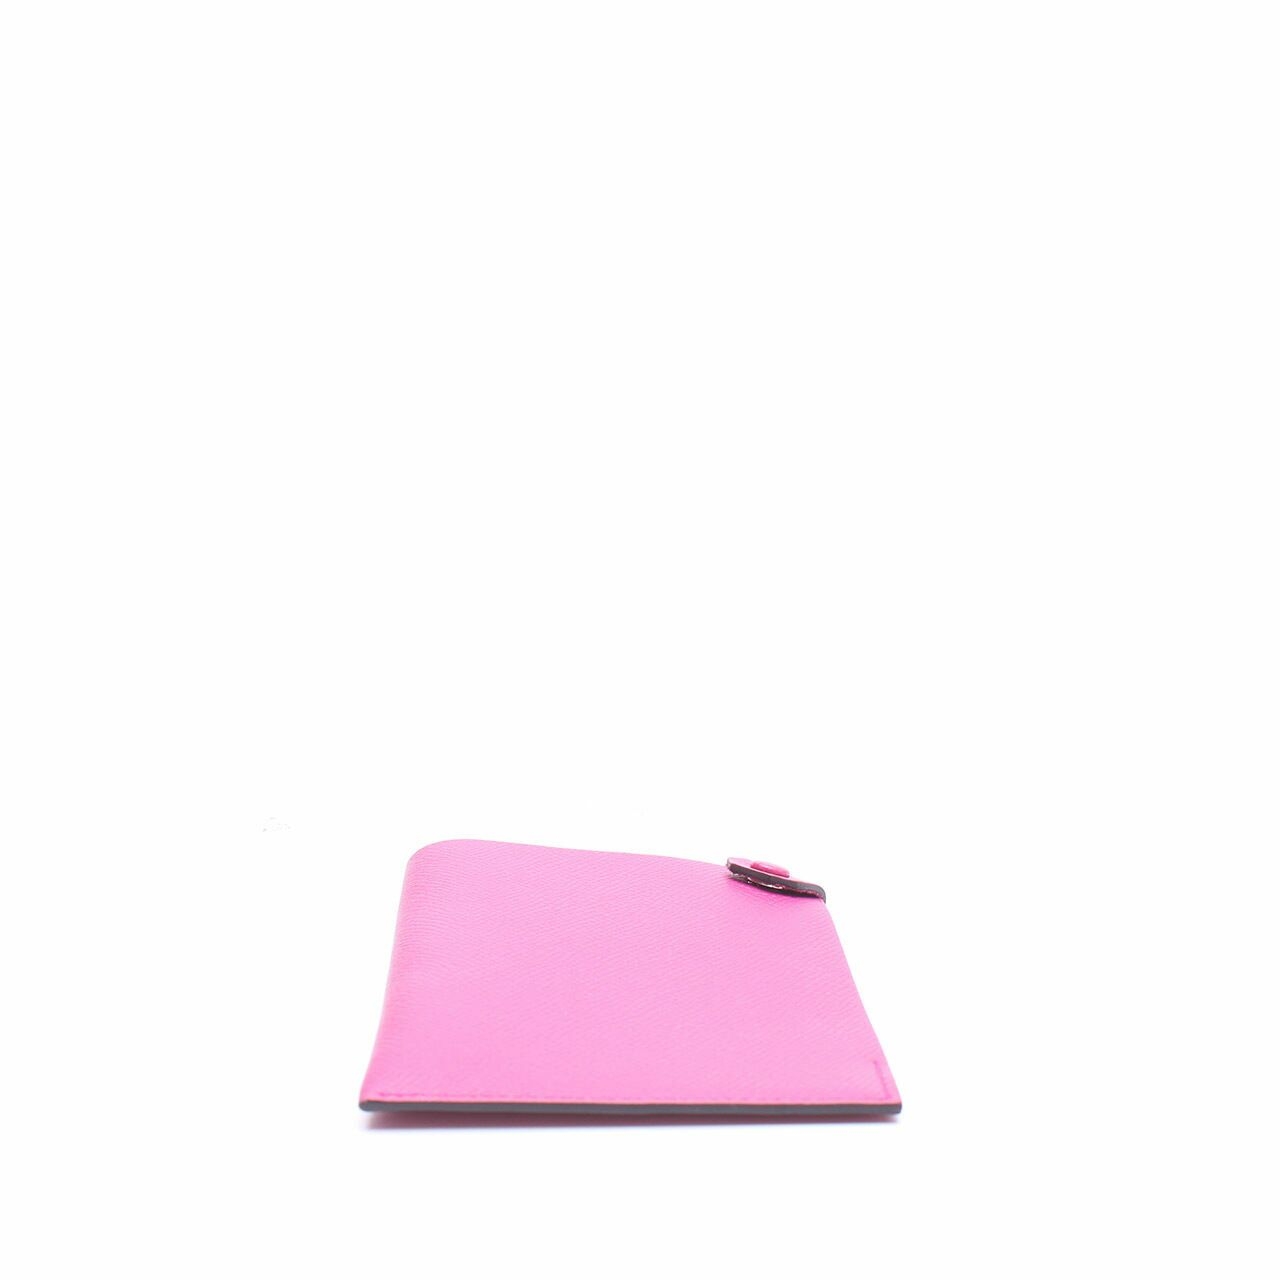 Hermes Pink Leather Card Holder